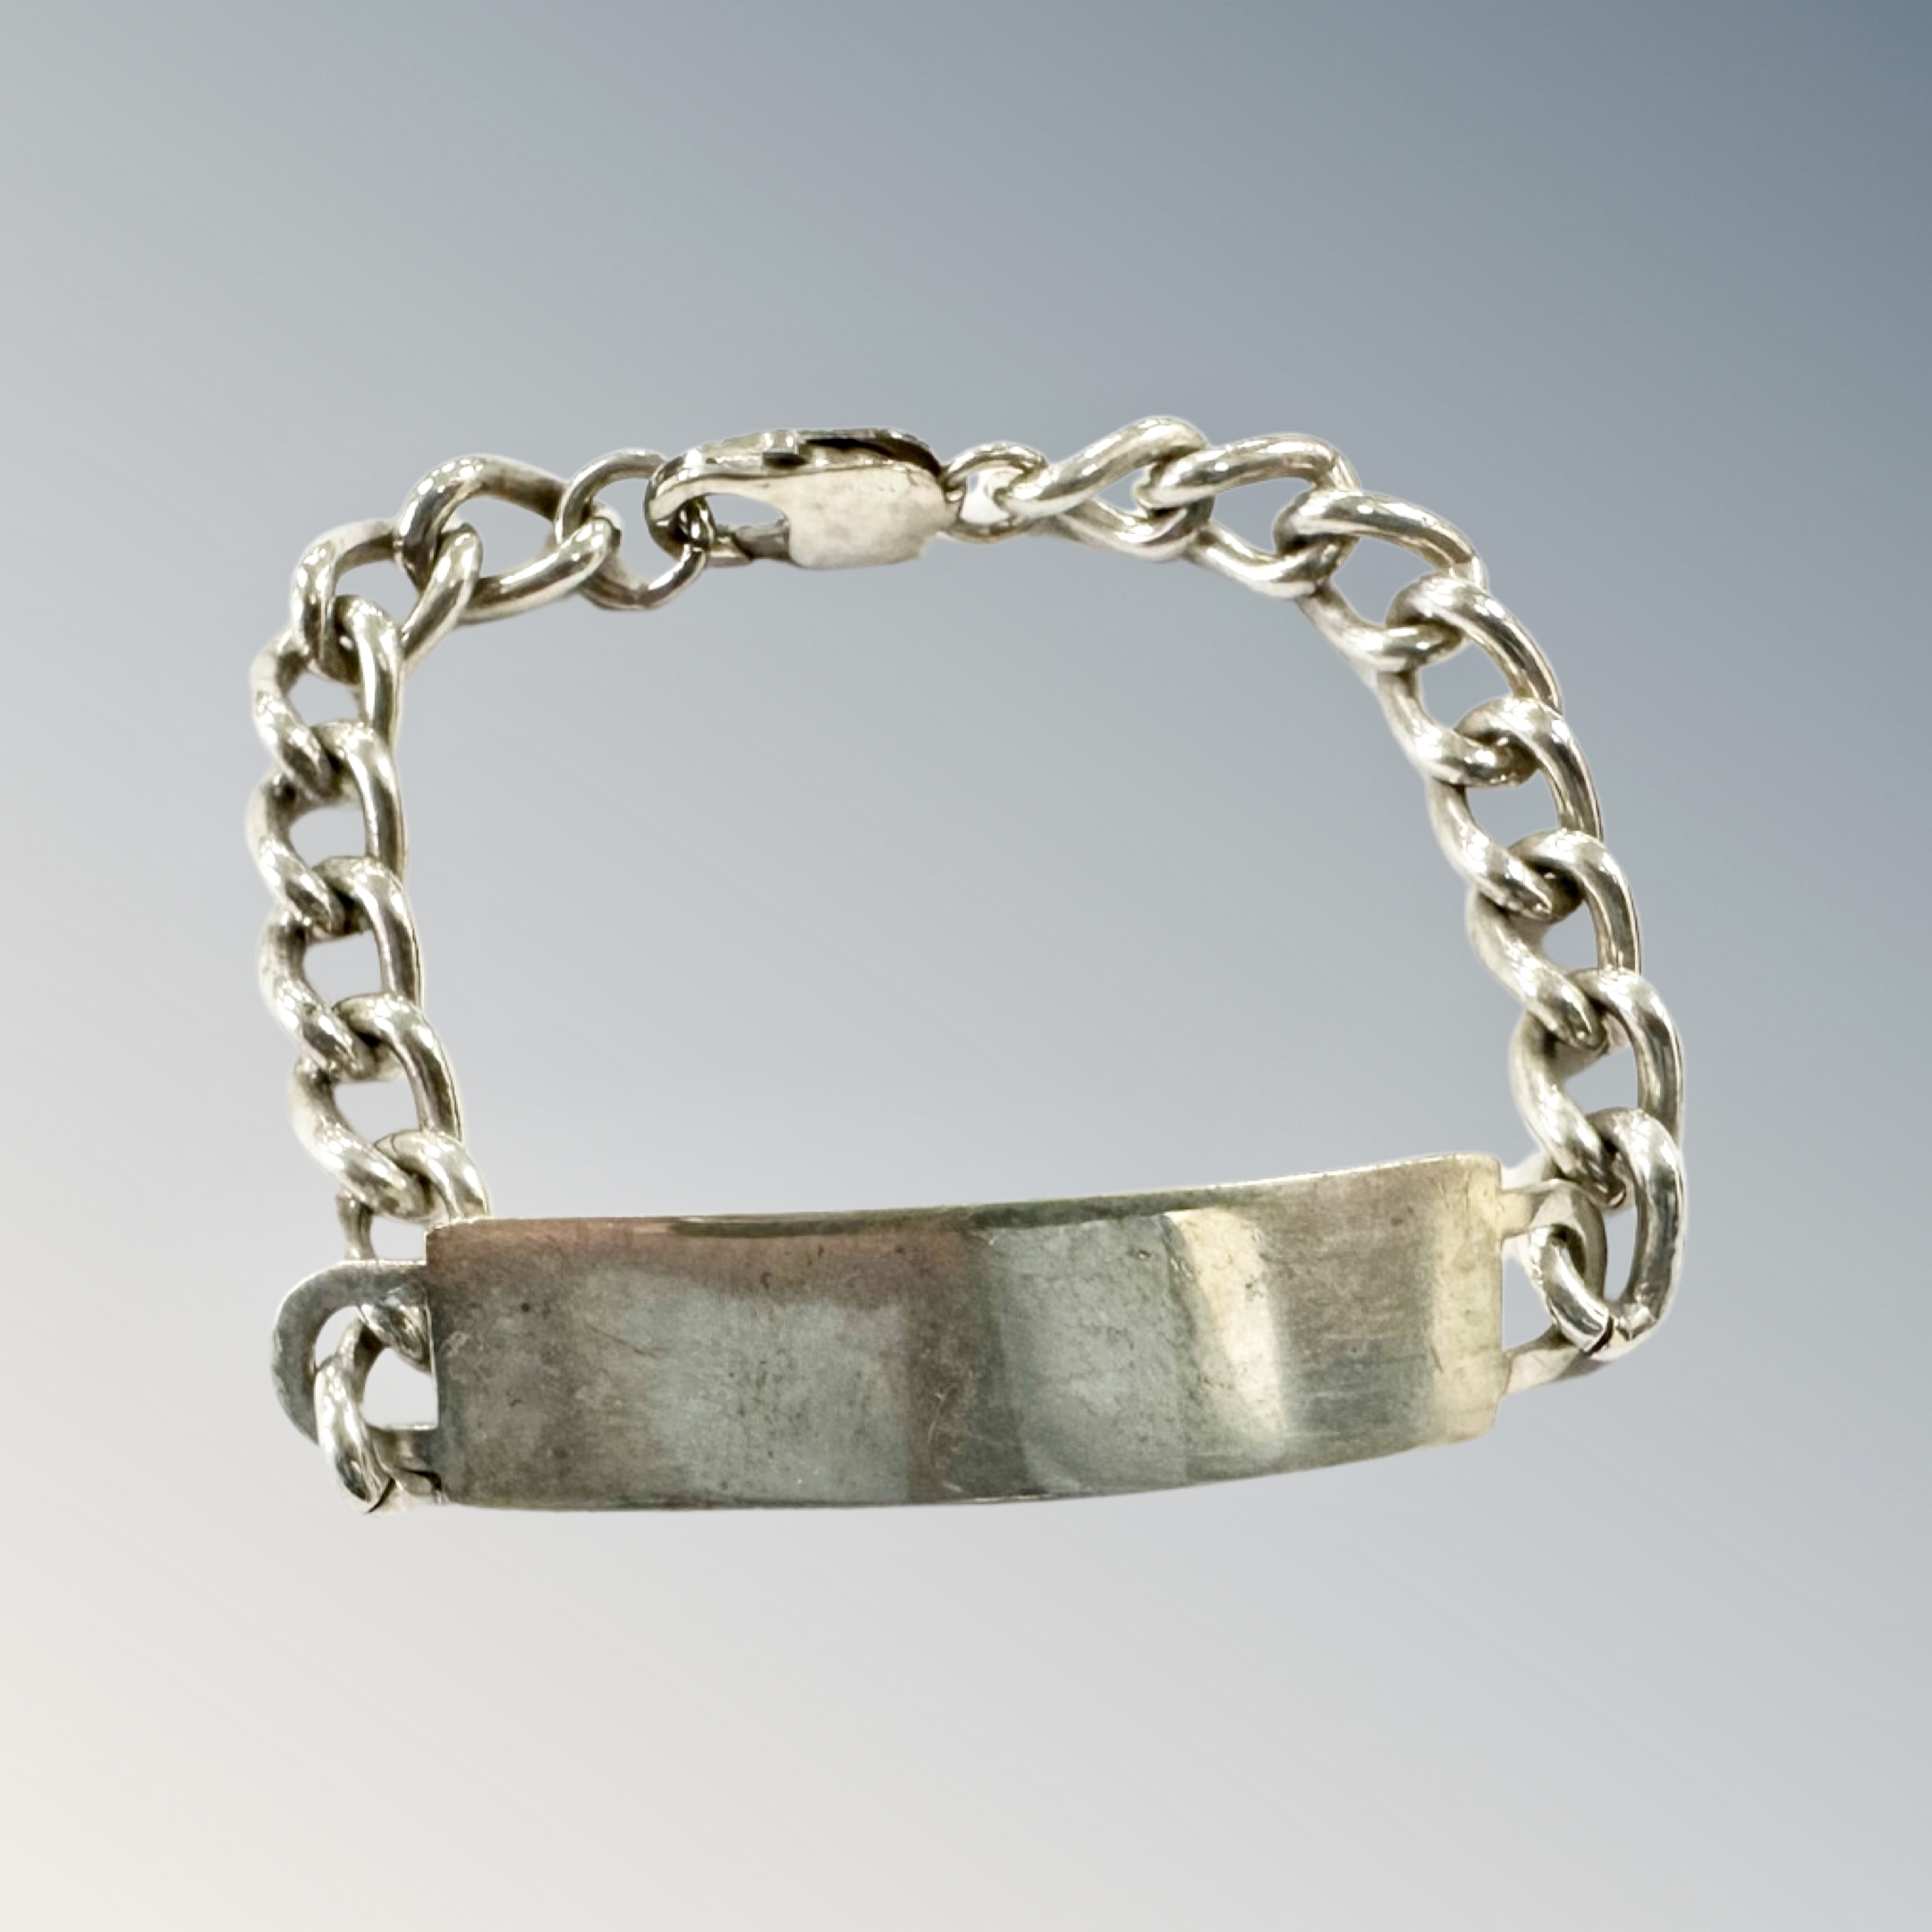 A silver ID bracelet